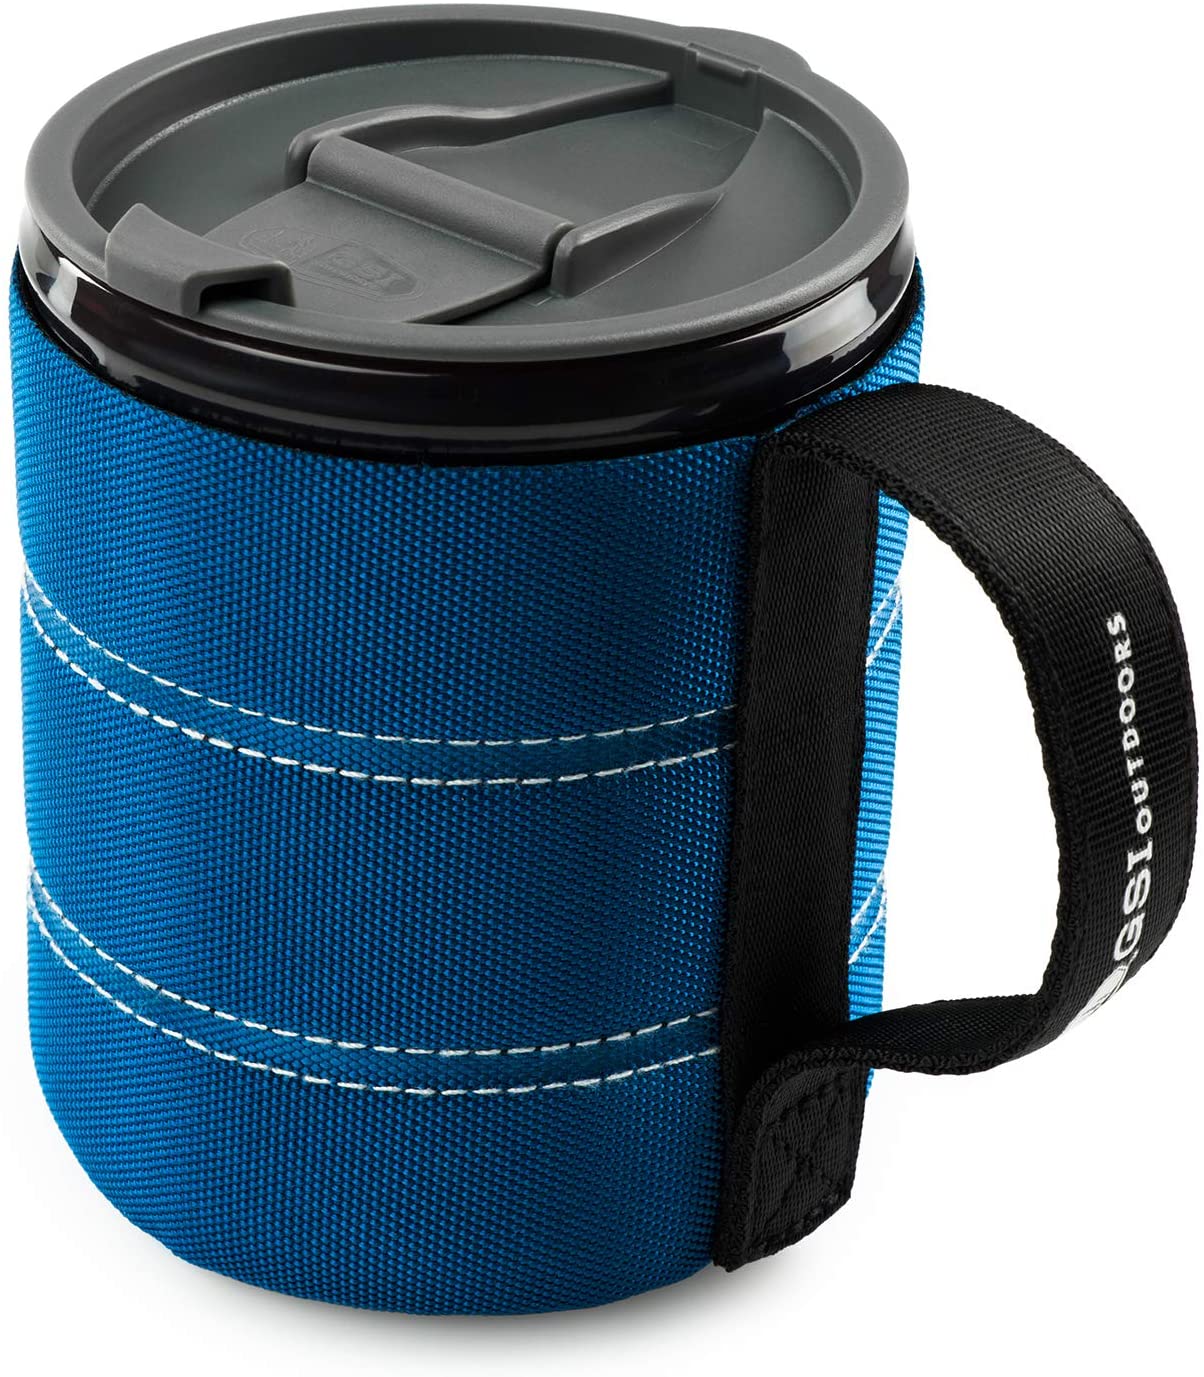 GSI Infinity Backpacker Mug